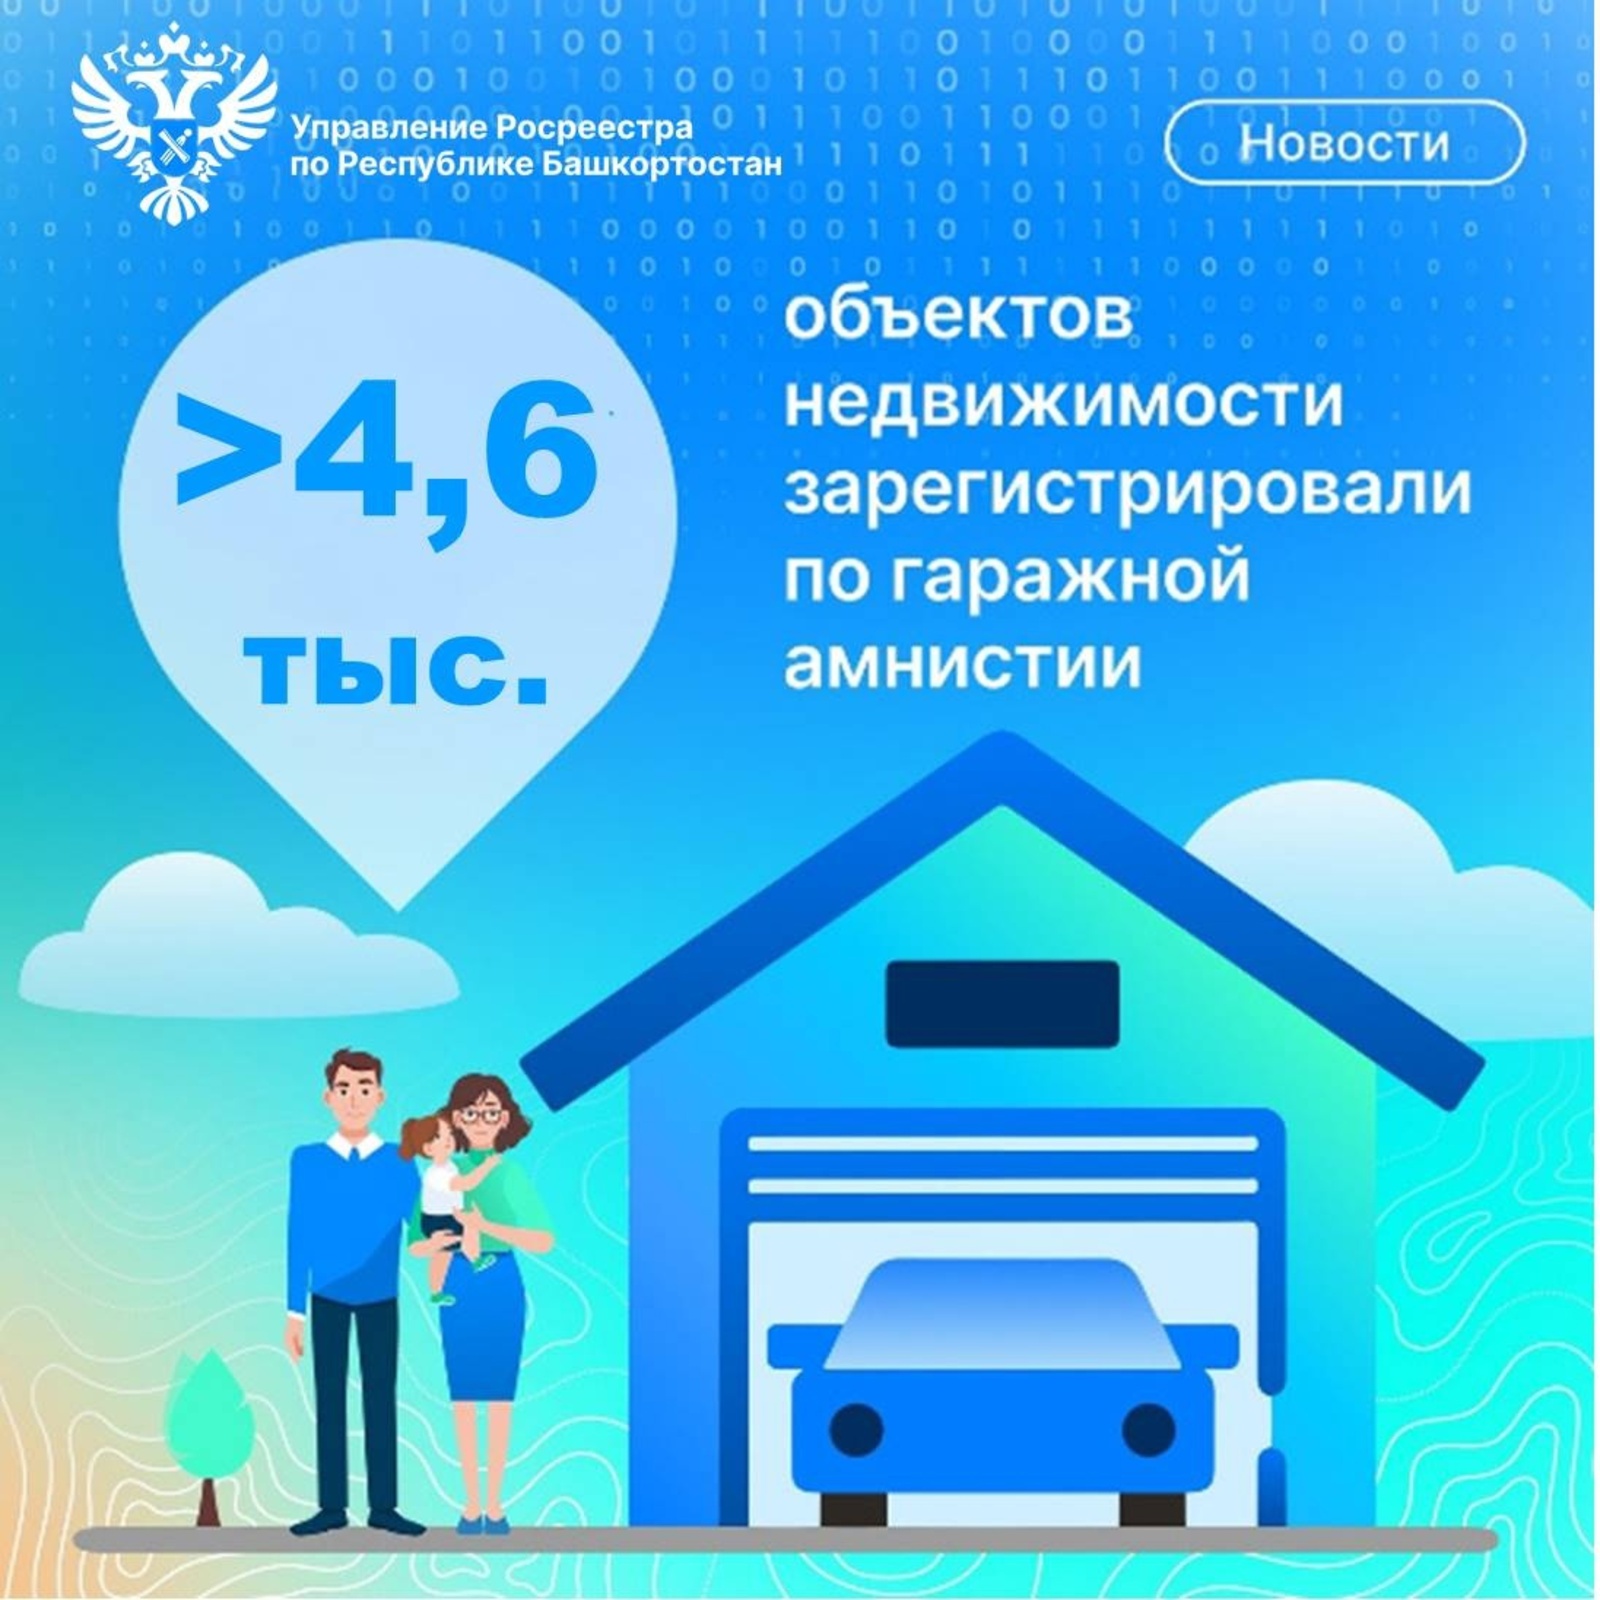 "Цифра дня": В Башкортостане за два года по «гаражной амнистии» оформлено более 4,6 тыс. объектов